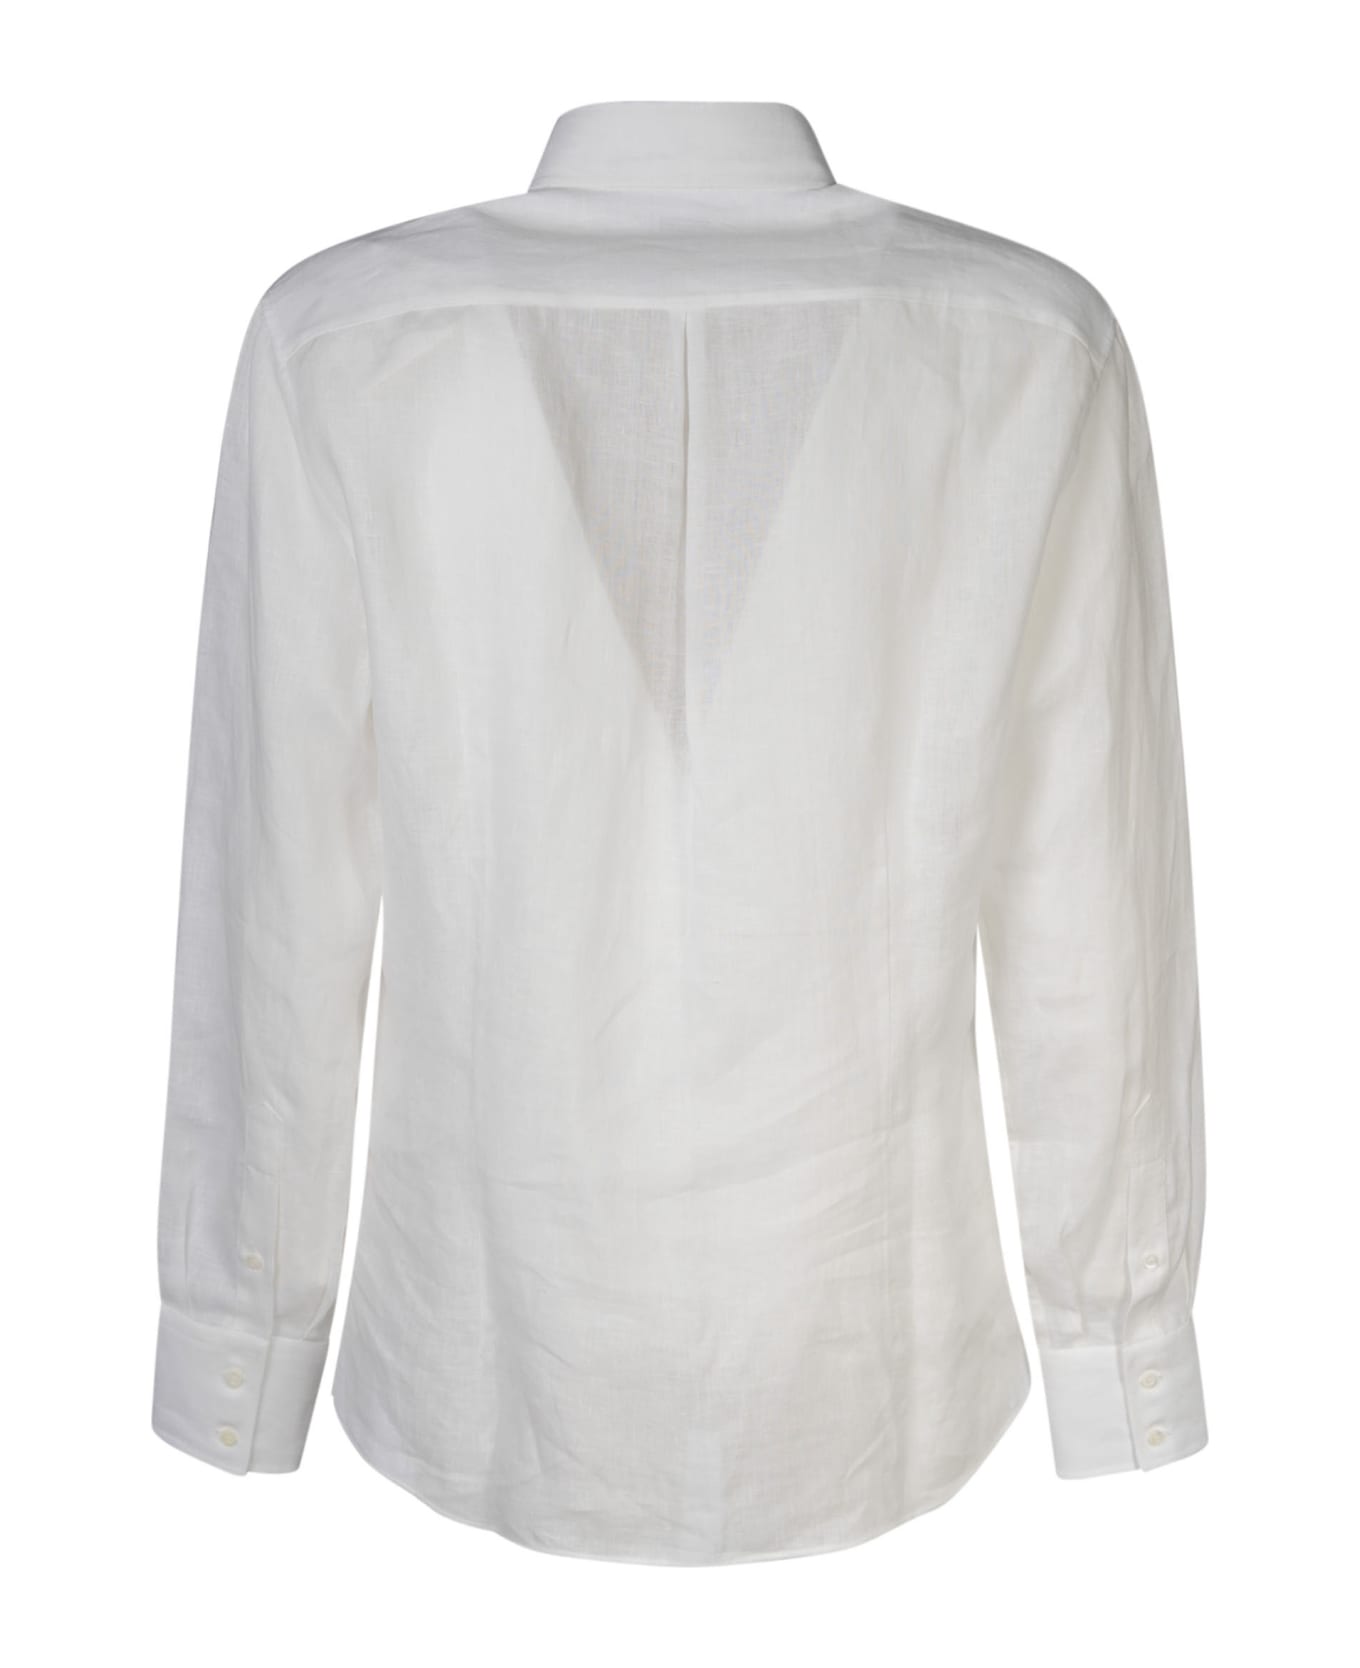 Brunello Cucinelli Long-sleeved Shirt - White シャツ